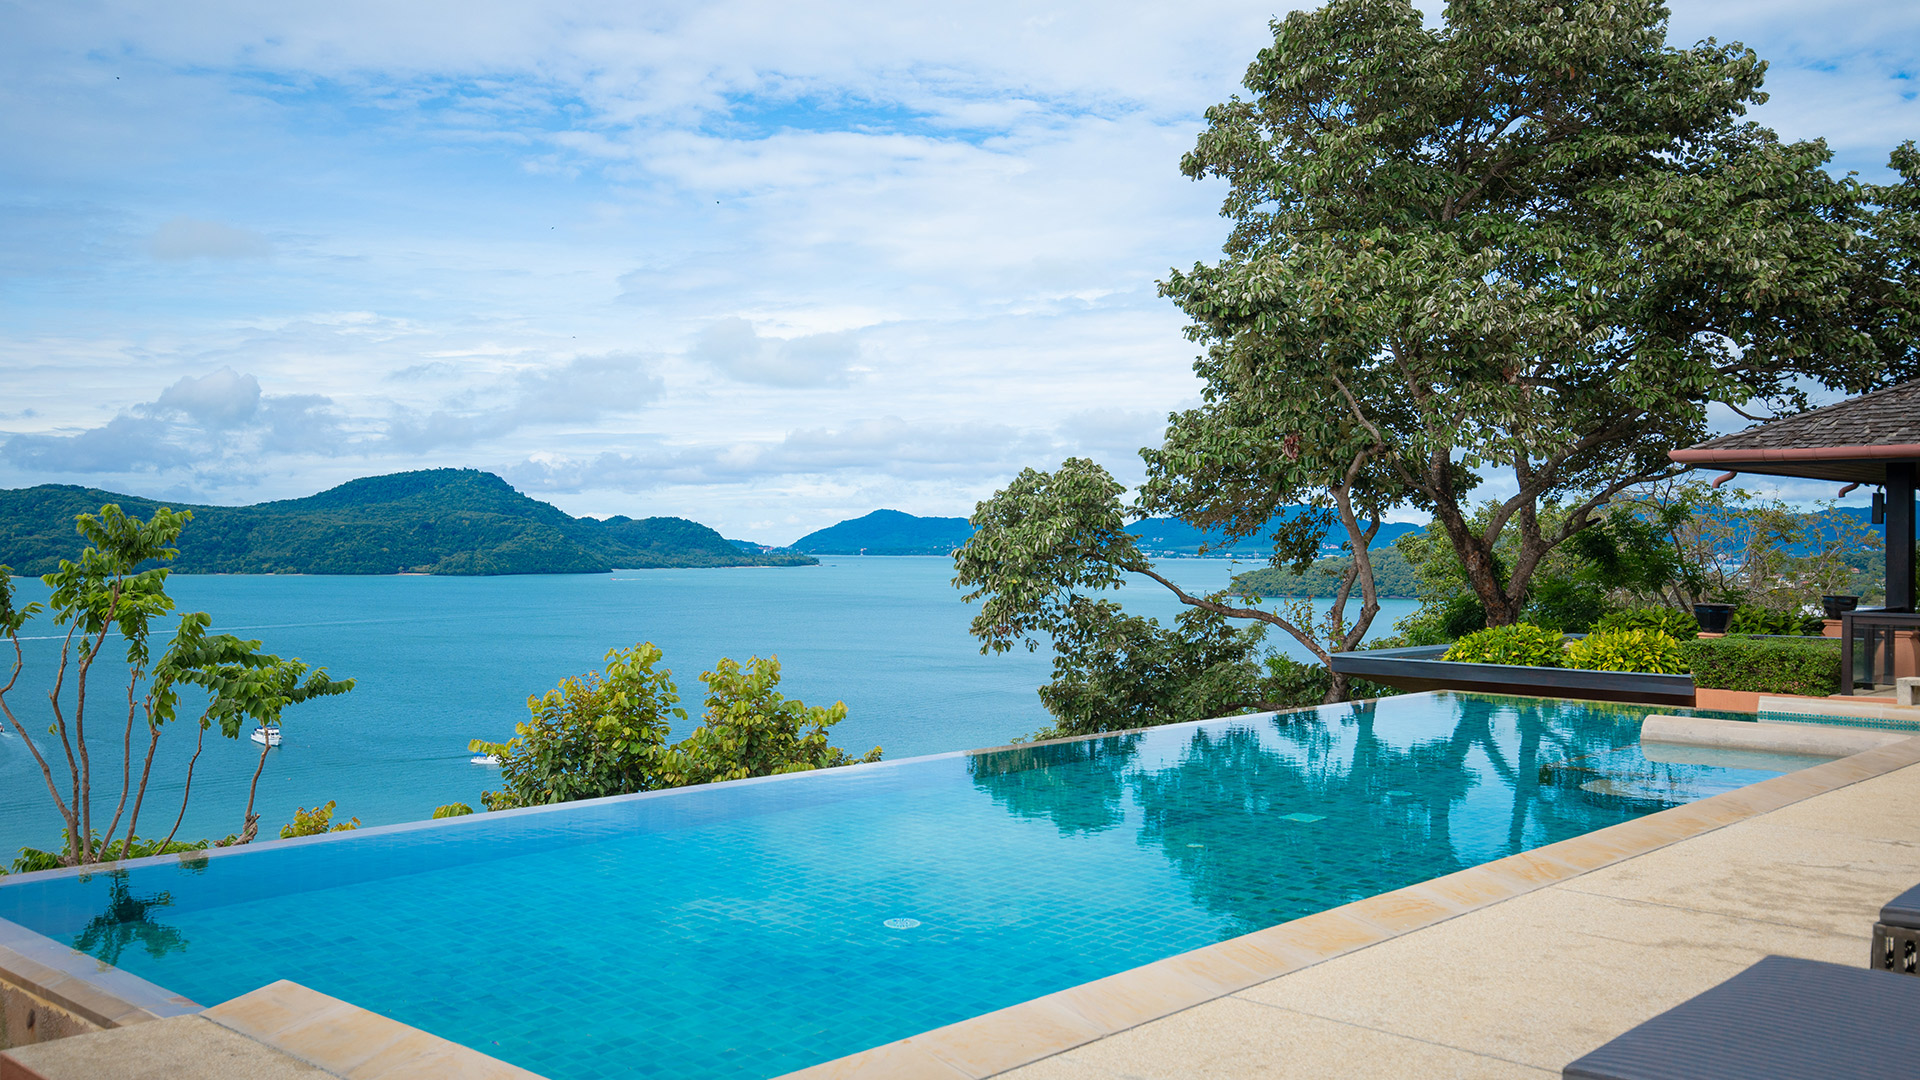 6-star-hotel-in-phuket-residence-villa-luxury-five-bedroom-amazing-ocean-views-pool